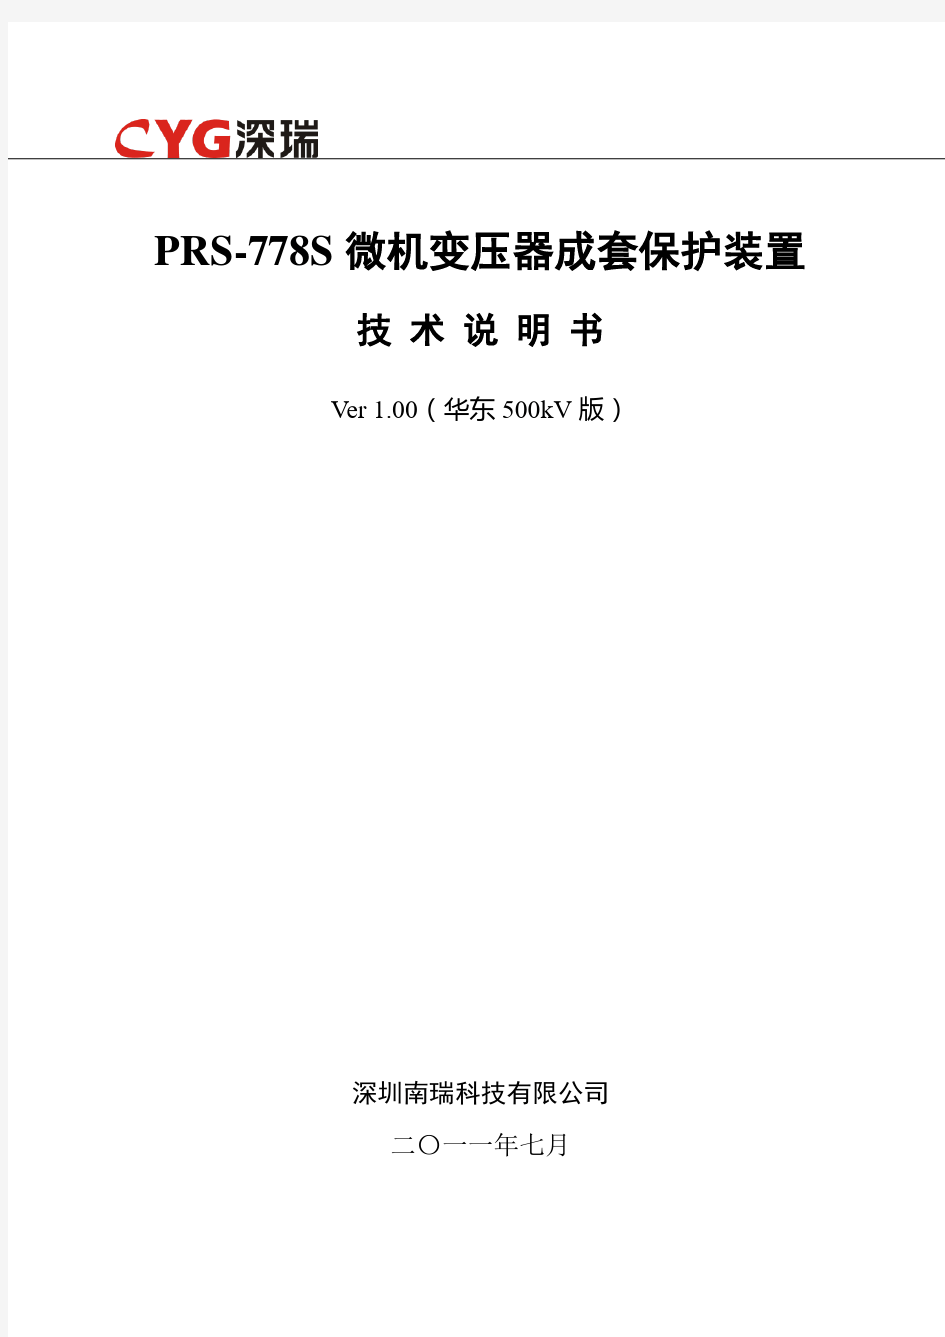 PRS-778S型变压器成套保护装置技术说明书-国网华东500kV版V100.120529